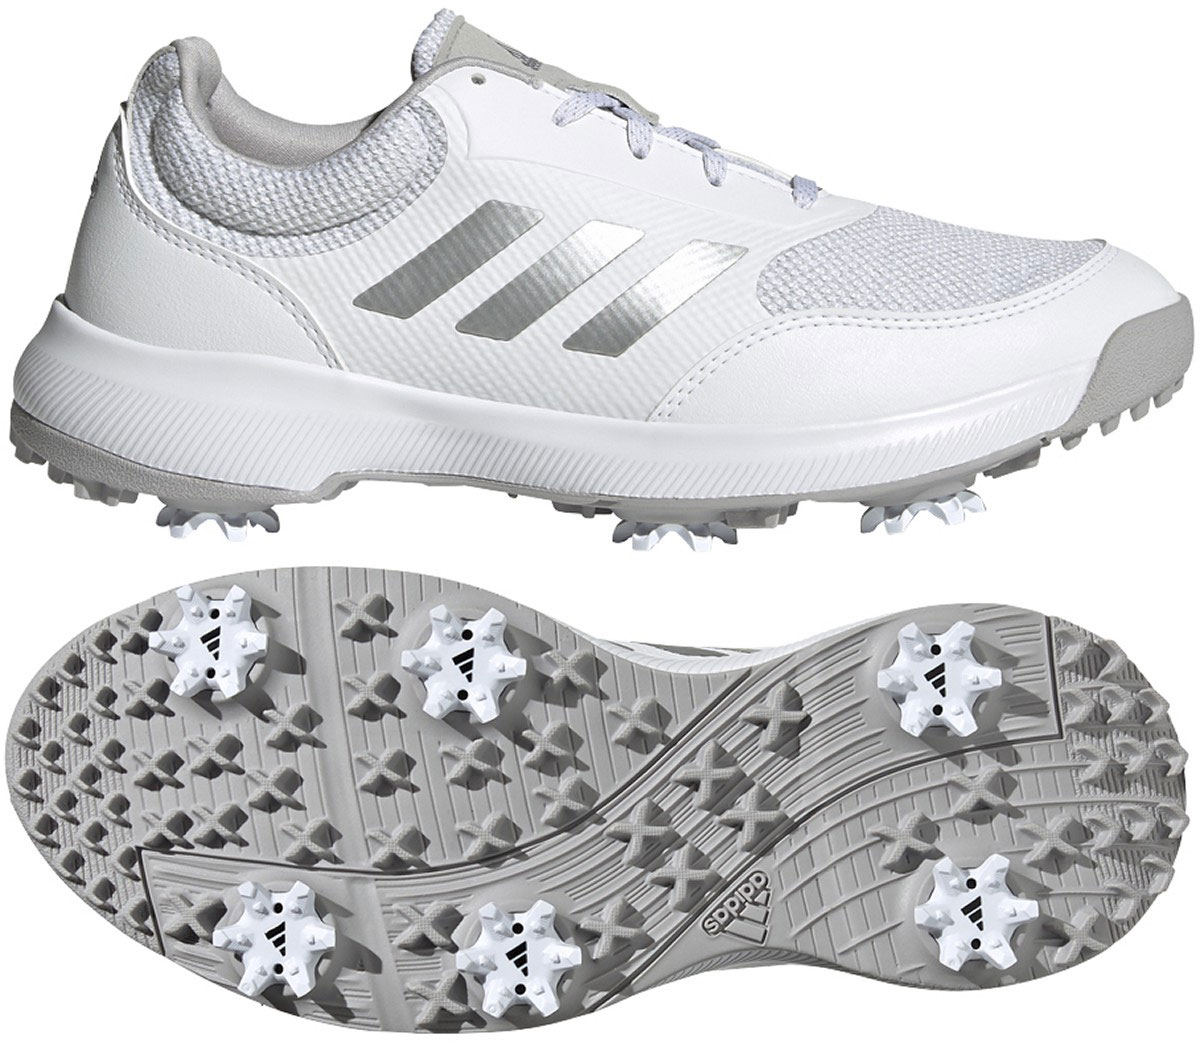 Por encima de la cabeza y el hombro infraestructura recuperar Adidas Tech Response Women's Golf Shoes